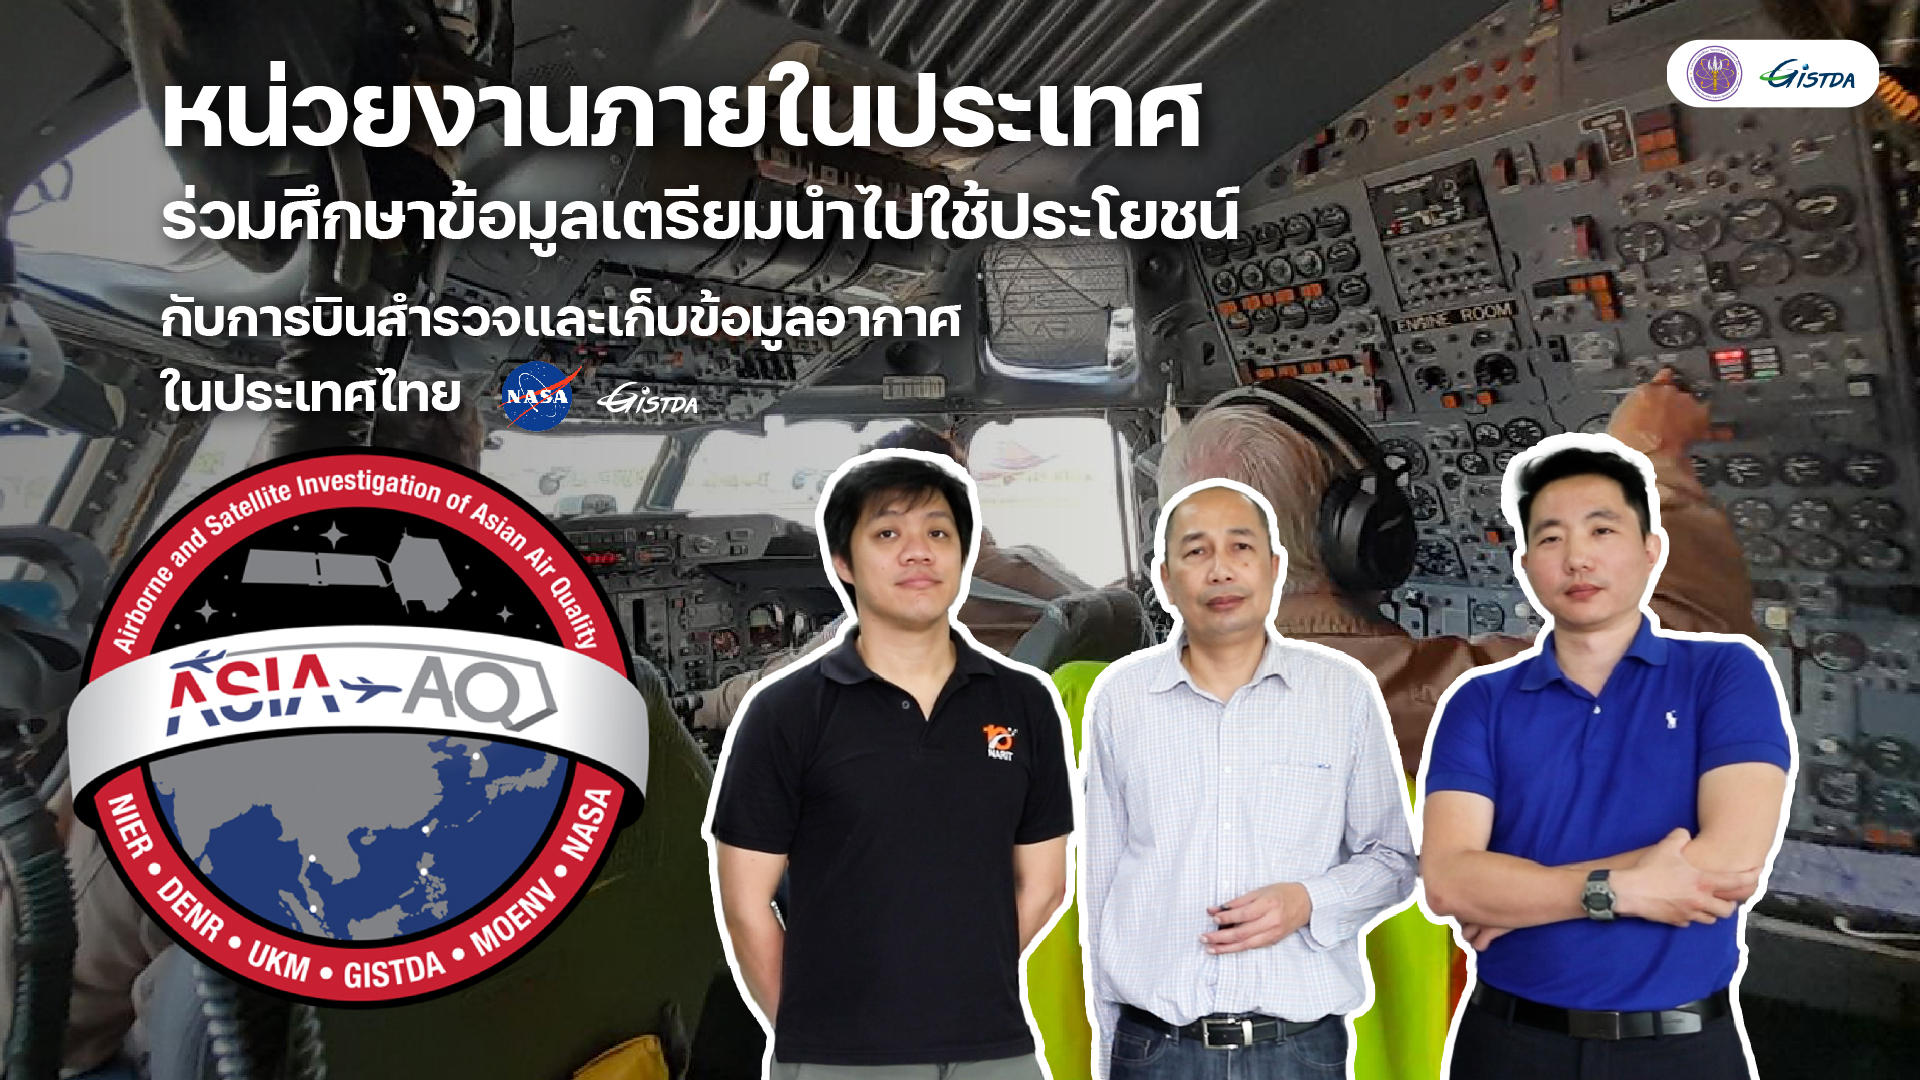 ภาพกิจกรรมโค้งสุดท้าย กับการเก็บข้อมูลค่าอากาศในไทยของ NASA (มีคลิป)